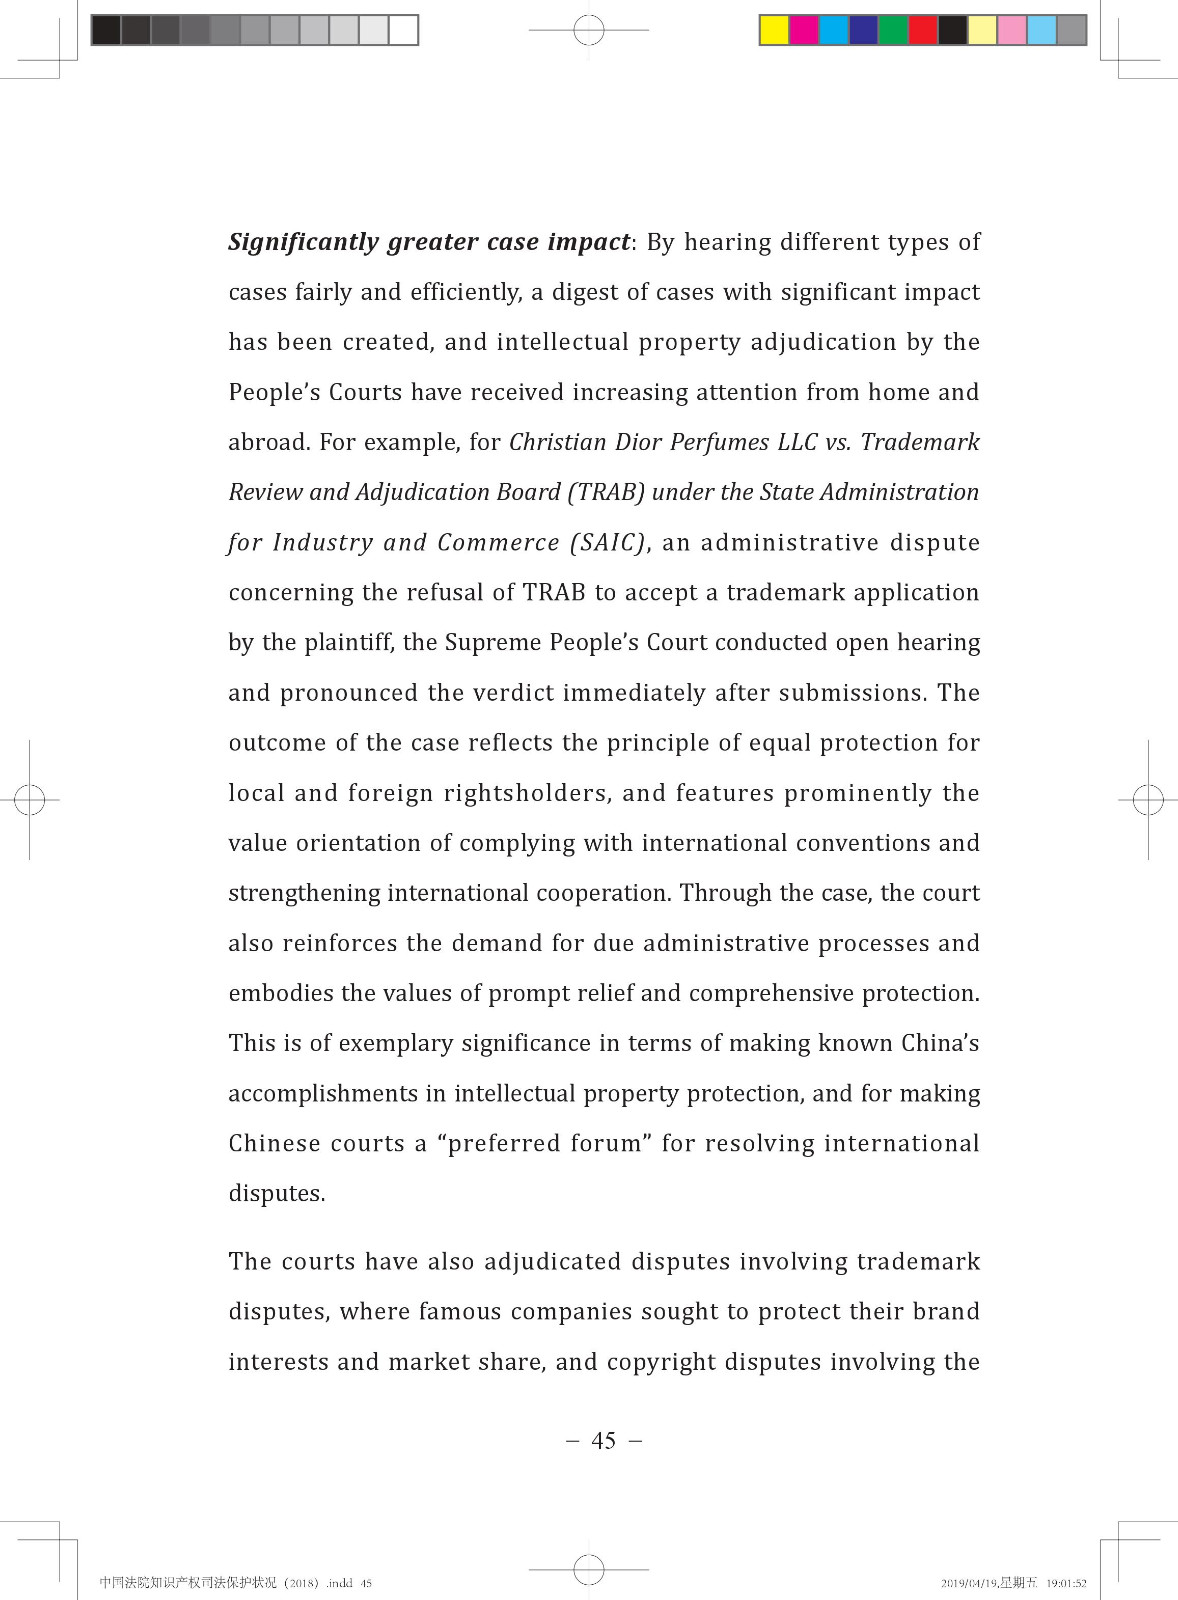 《中国法院知识产权司法保护状况（2018年）》白皮书全文